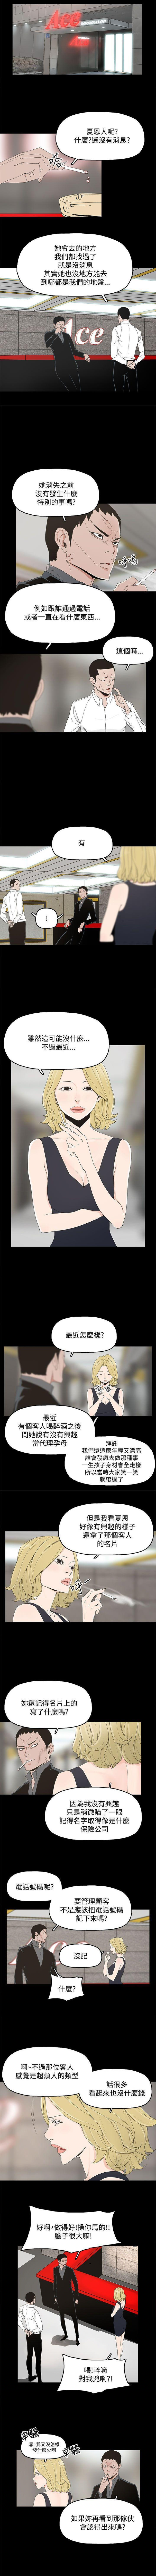 Livecam 代理孕母 7 [Chinese] Manhwa Smoking - Page 6